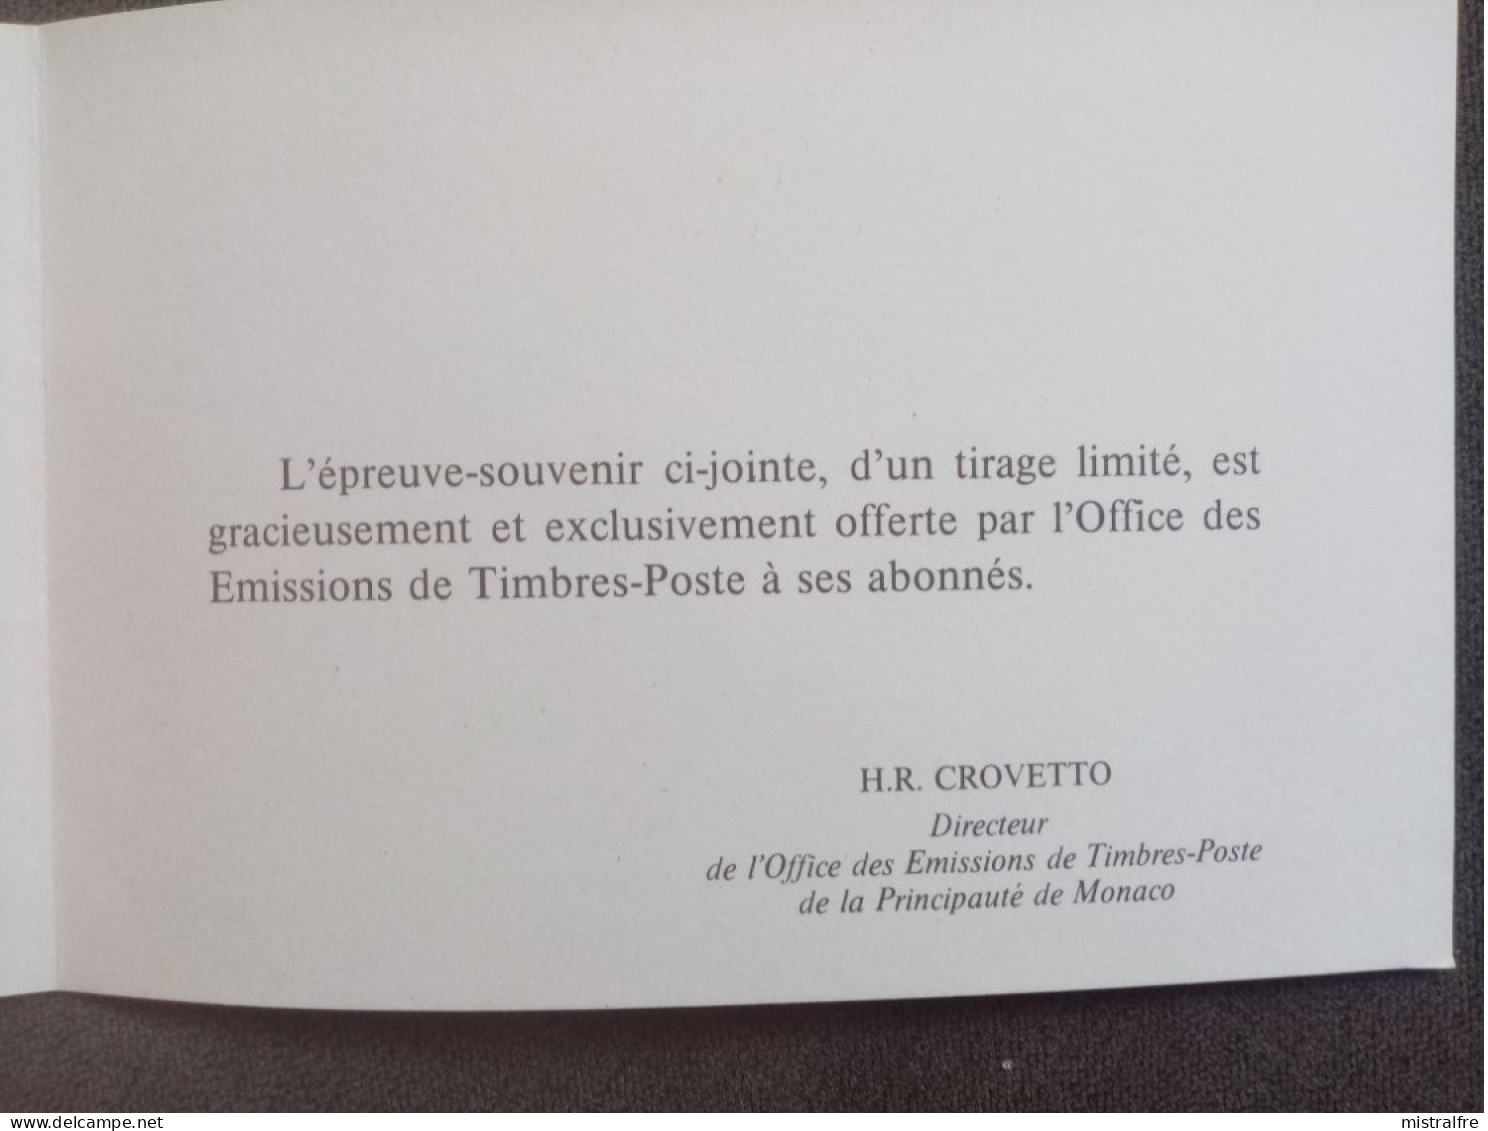 MONACO.1985. " Centenaire du 1ér Timbre " Epreuve souvenir et Essai d'artiste.